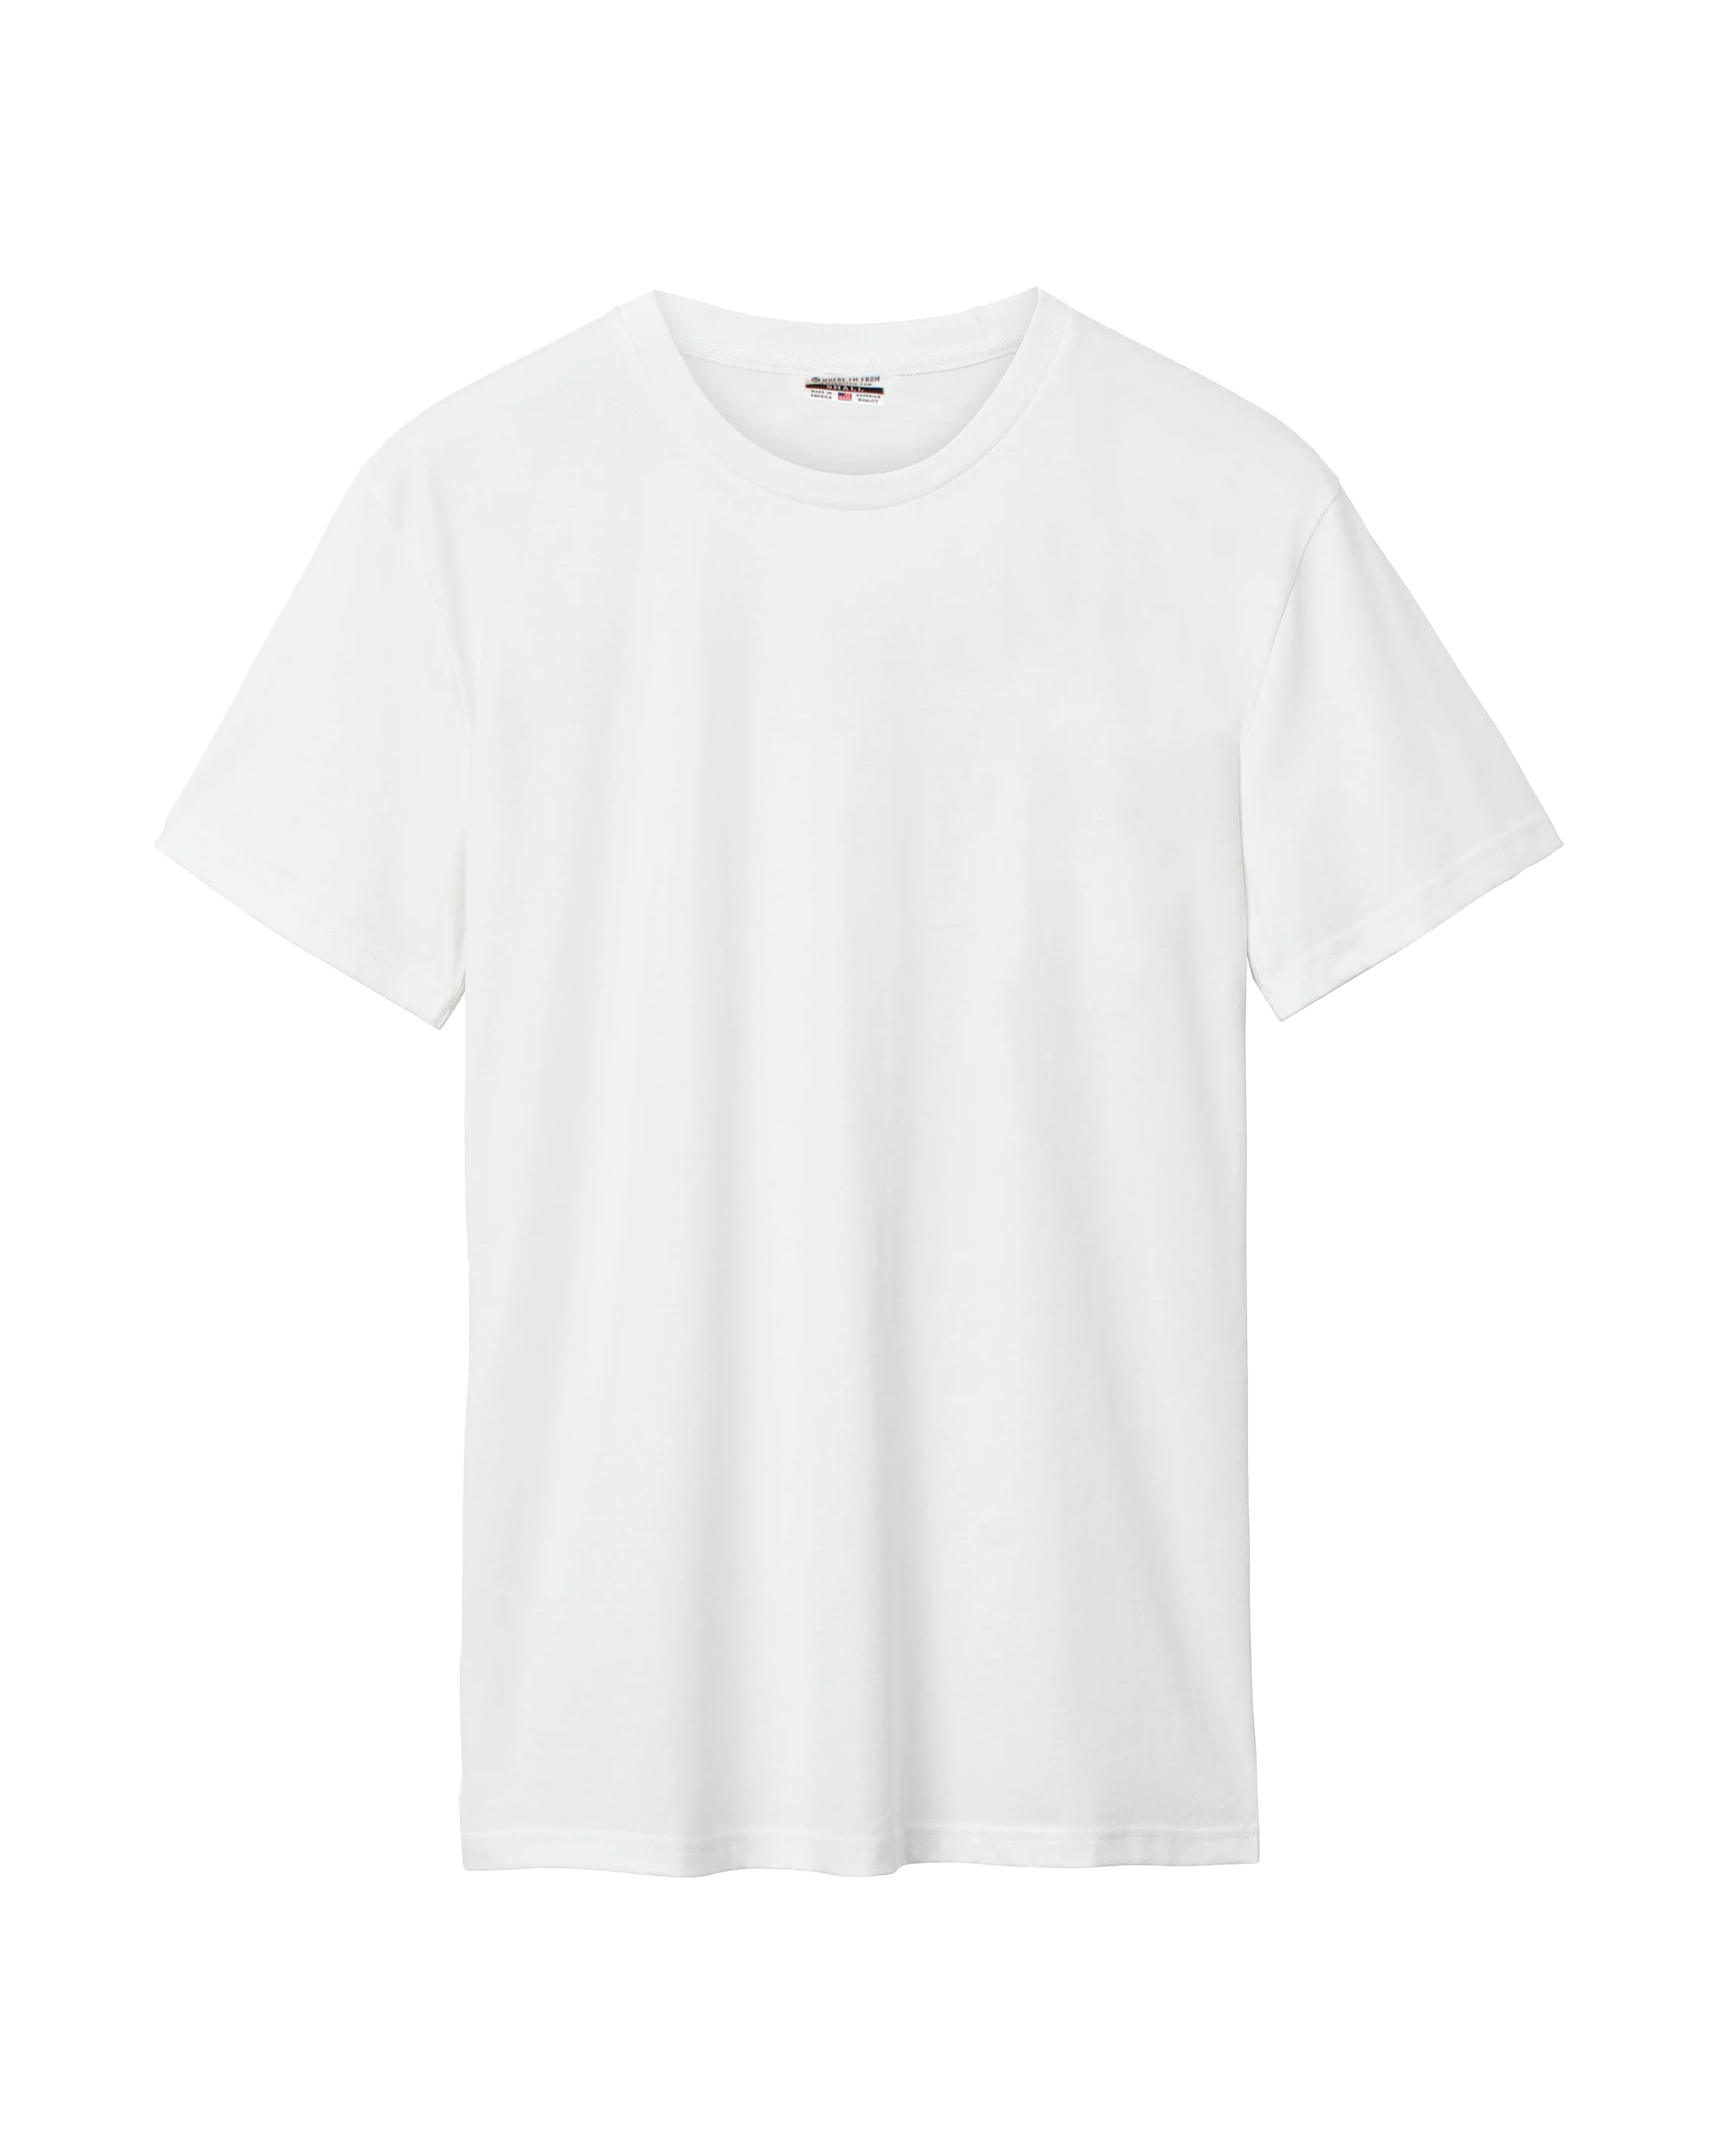 White Cotton Crew T-Shirt